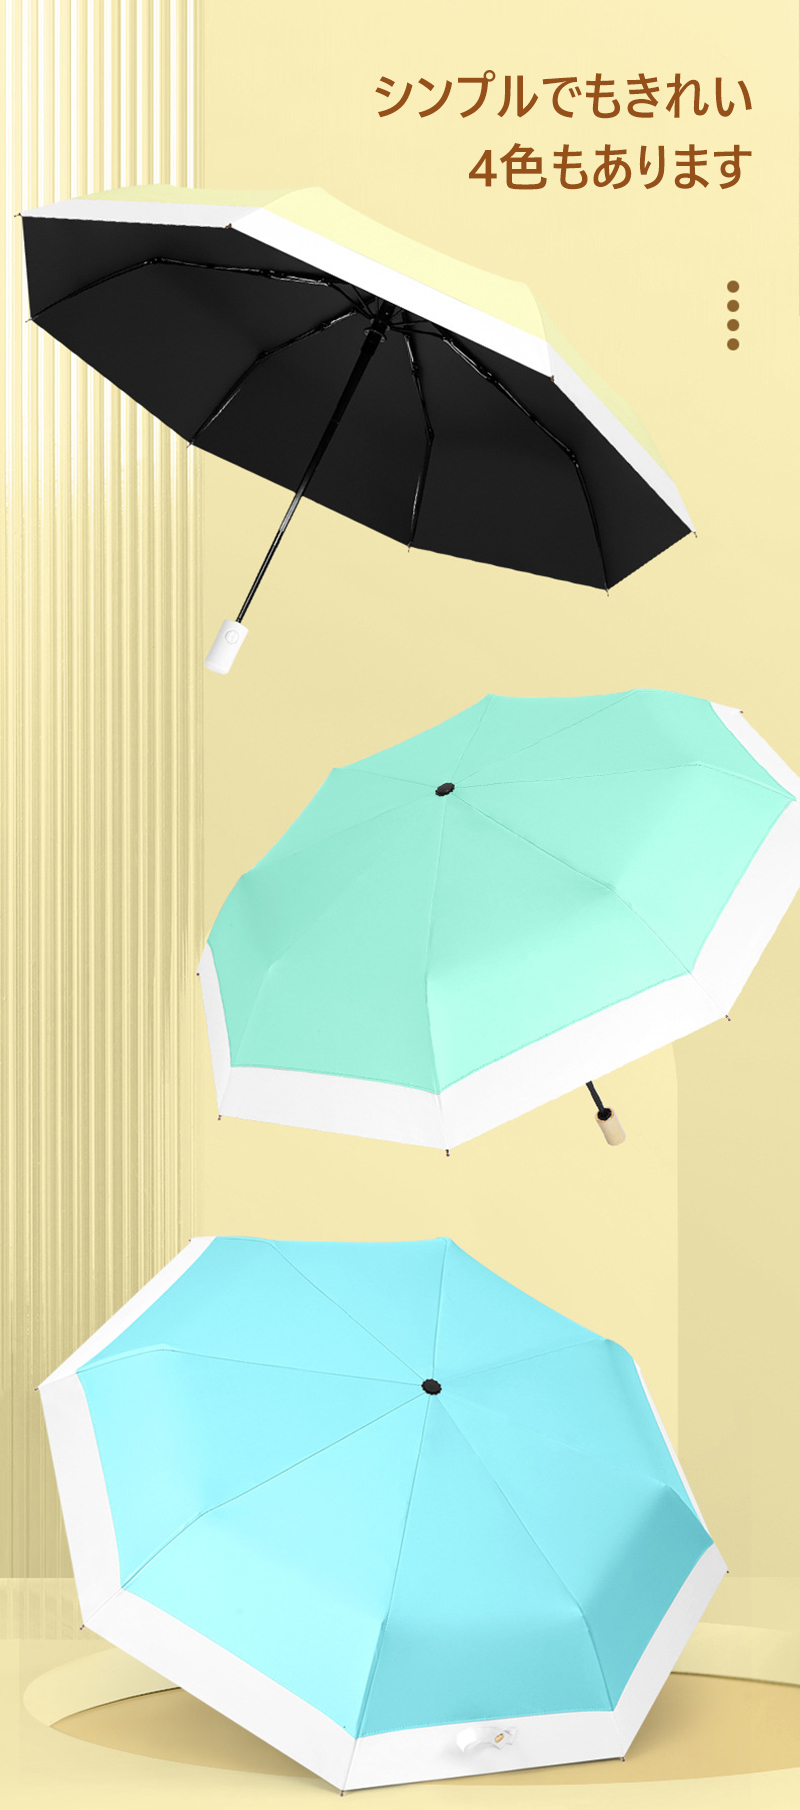 市場 傘 持ちやすい かわいい 遮光率高い おしゃれ 日傘 8本骨 晴雨兼用 自動開閉 折りたたみ傘 折り畳み傘 大きめ 耐風 ワンタッチ